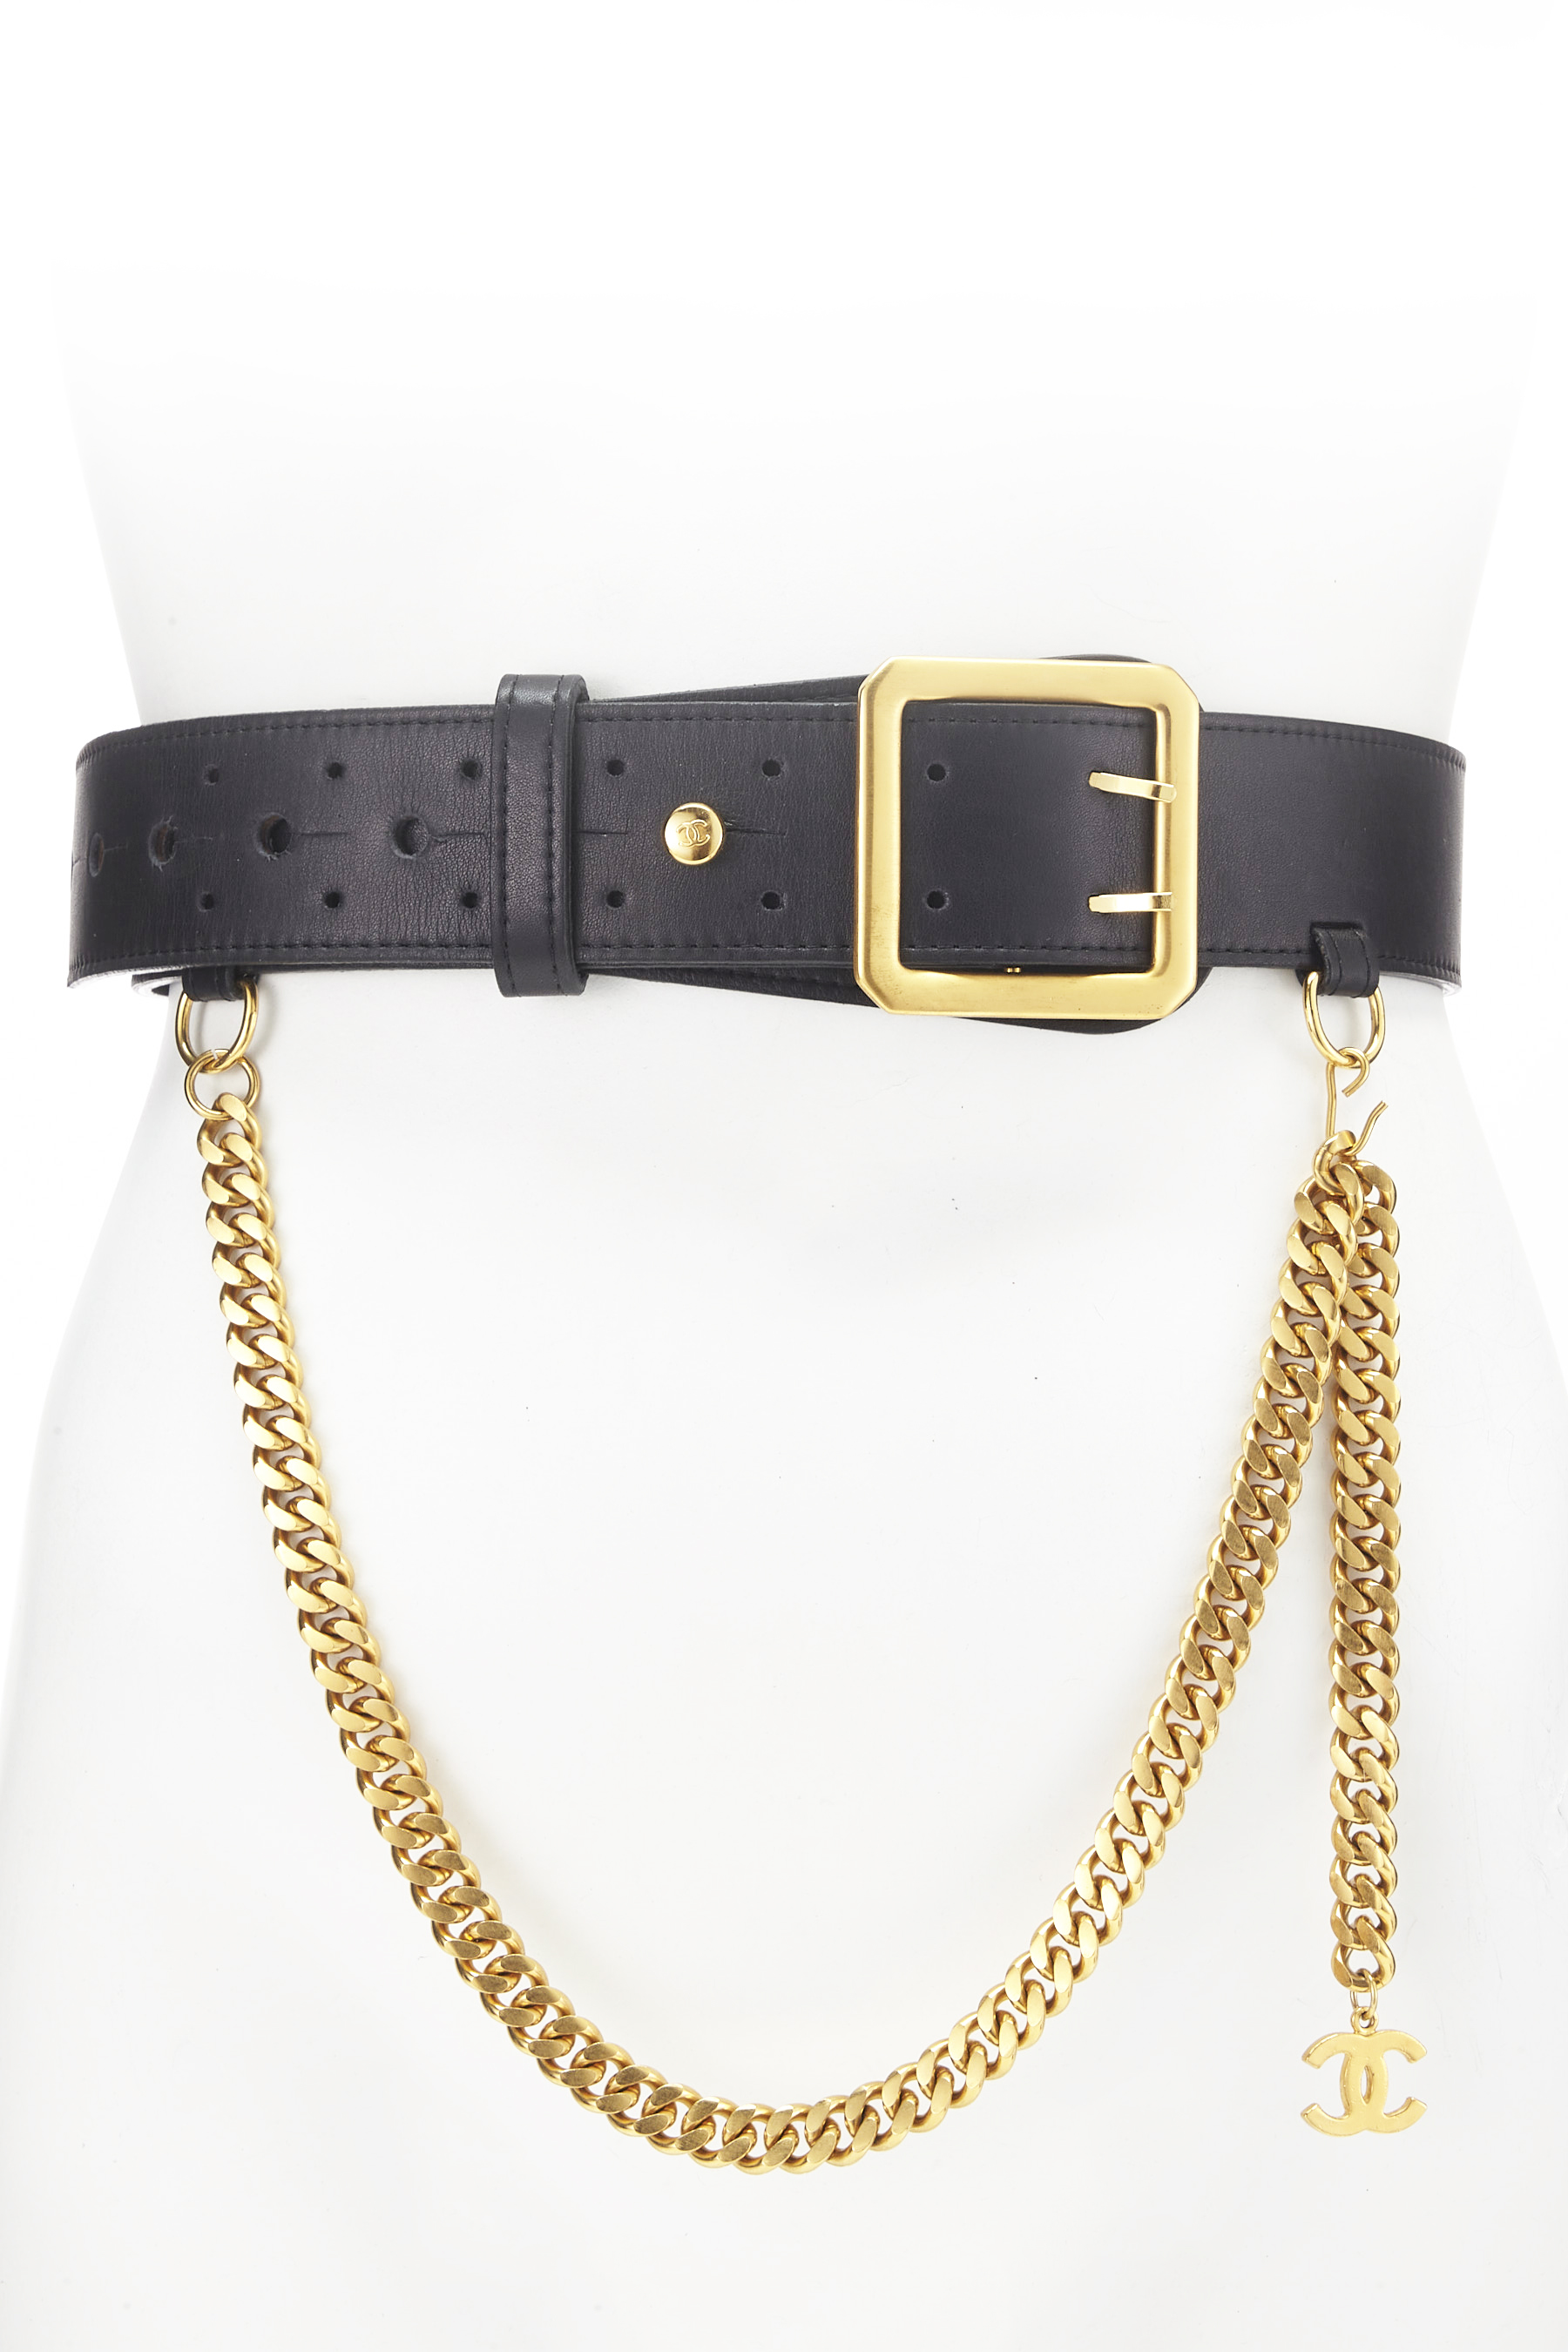 Chanel Black Leather & Gold Chain Belt Q6A04I1LKB015